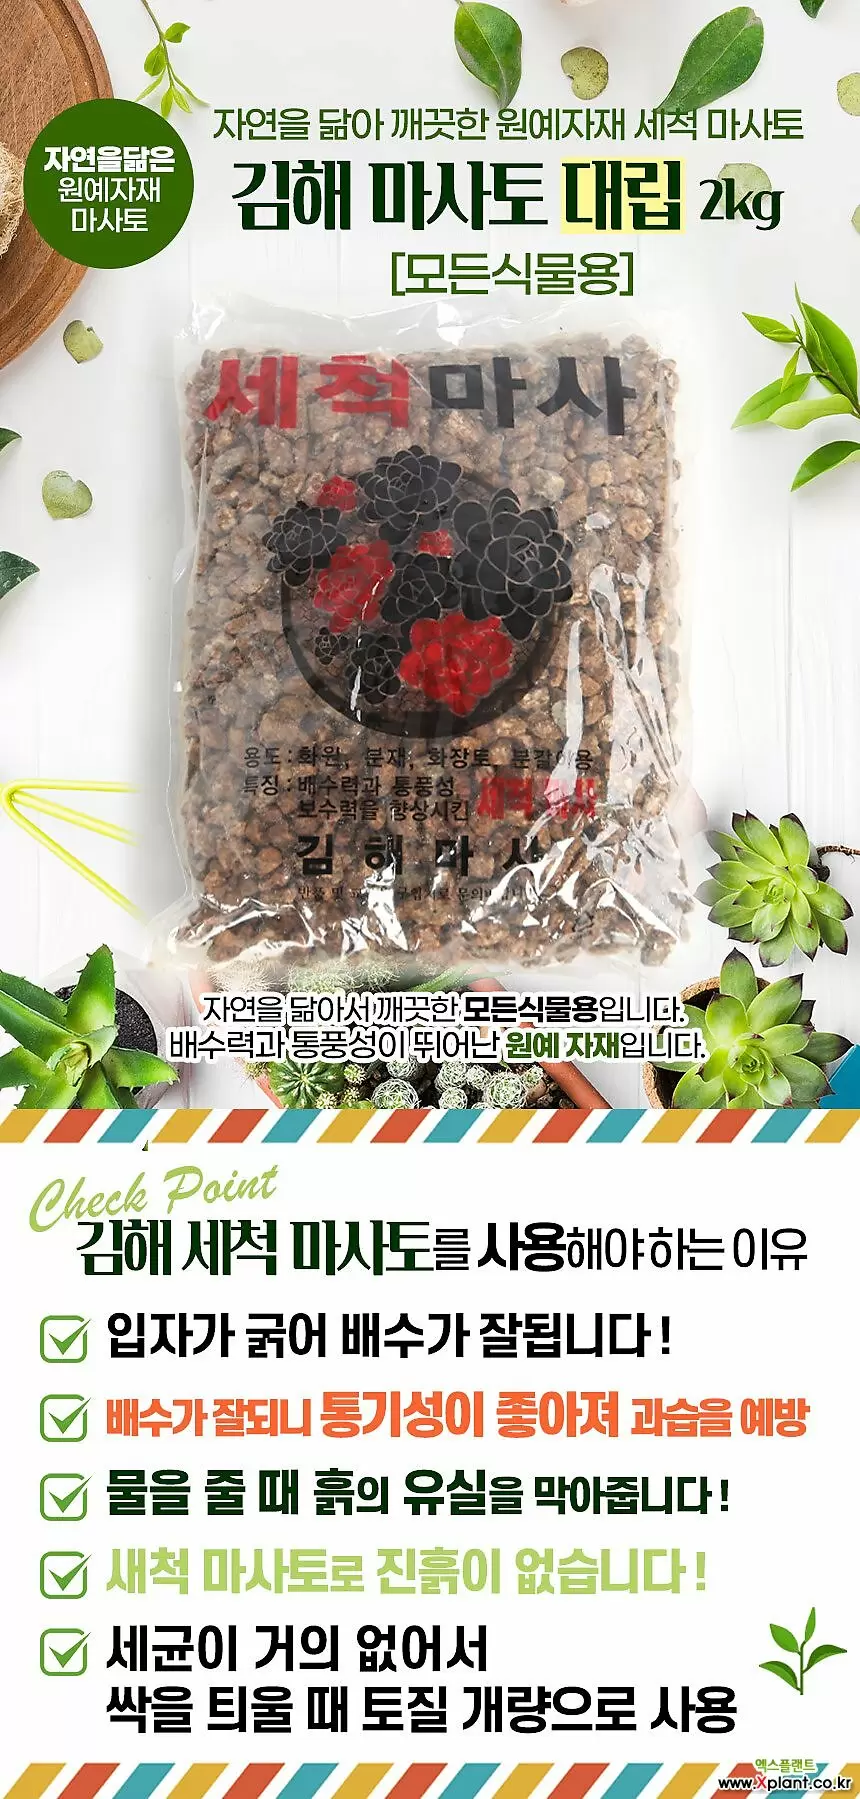 국민마사토 김해세척마사(대립)-주말농장 식물보호제 영양제 활력제 인아트스튜디오